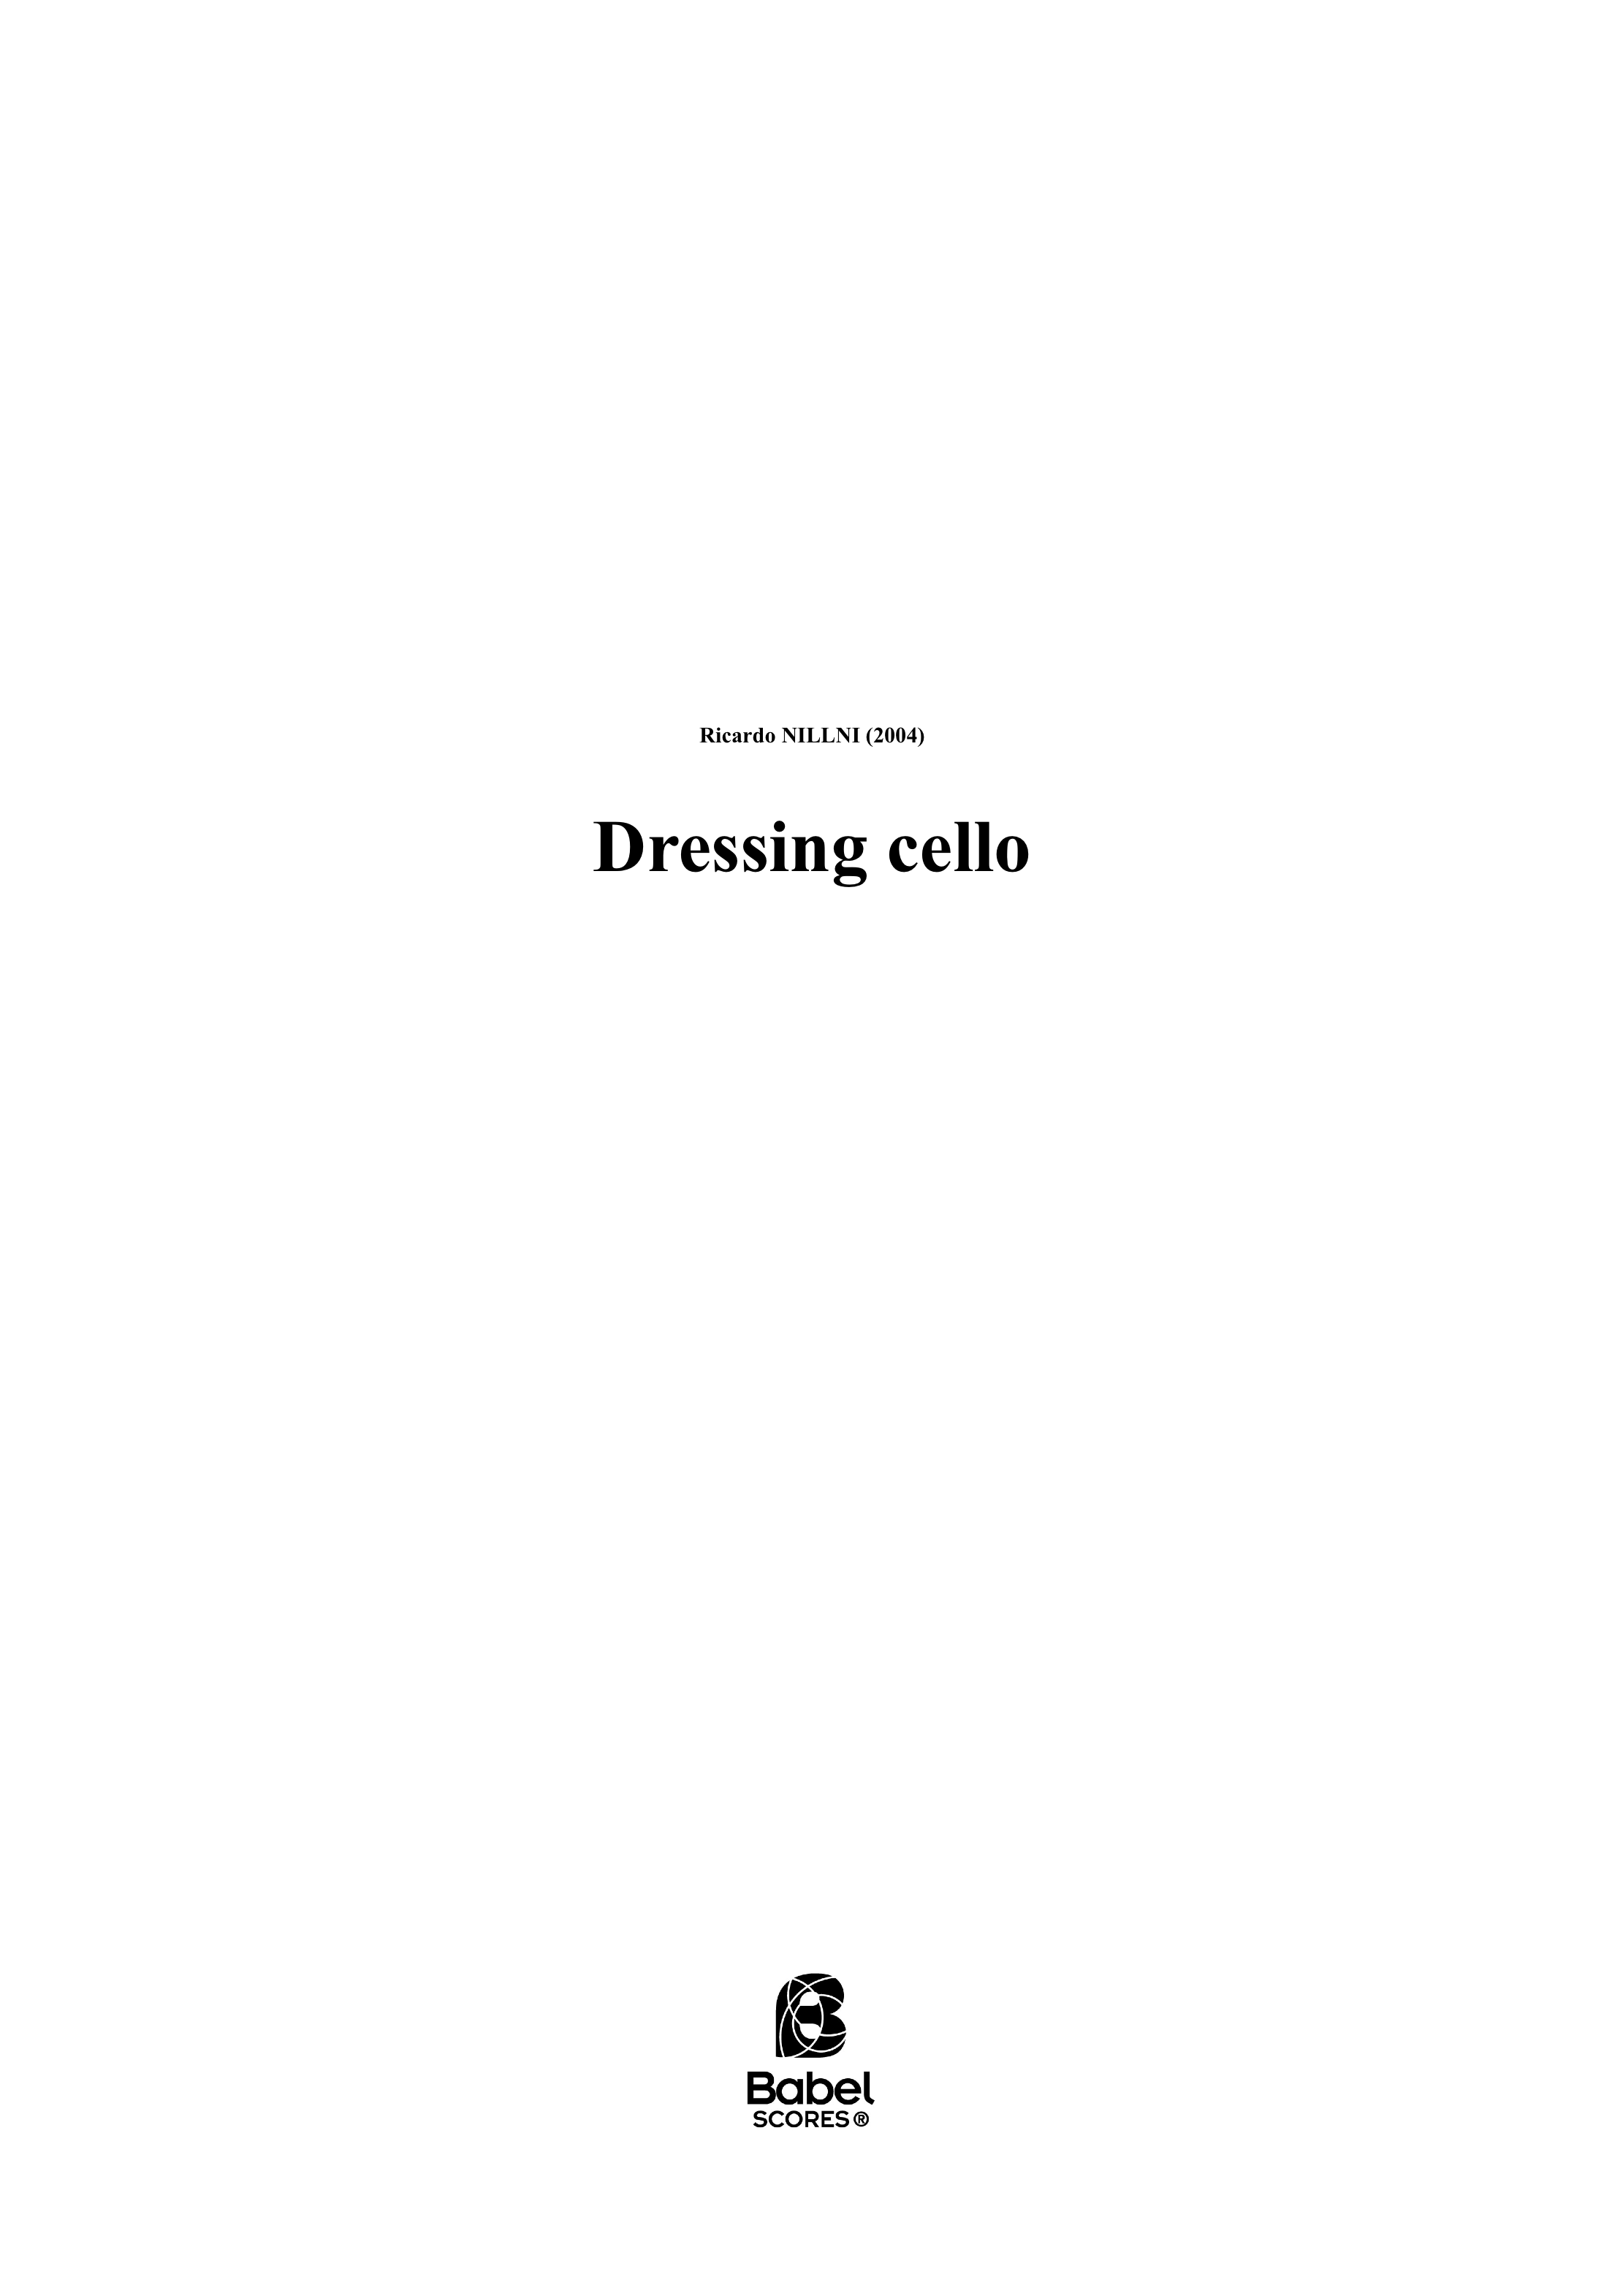 dressing cello A3 z